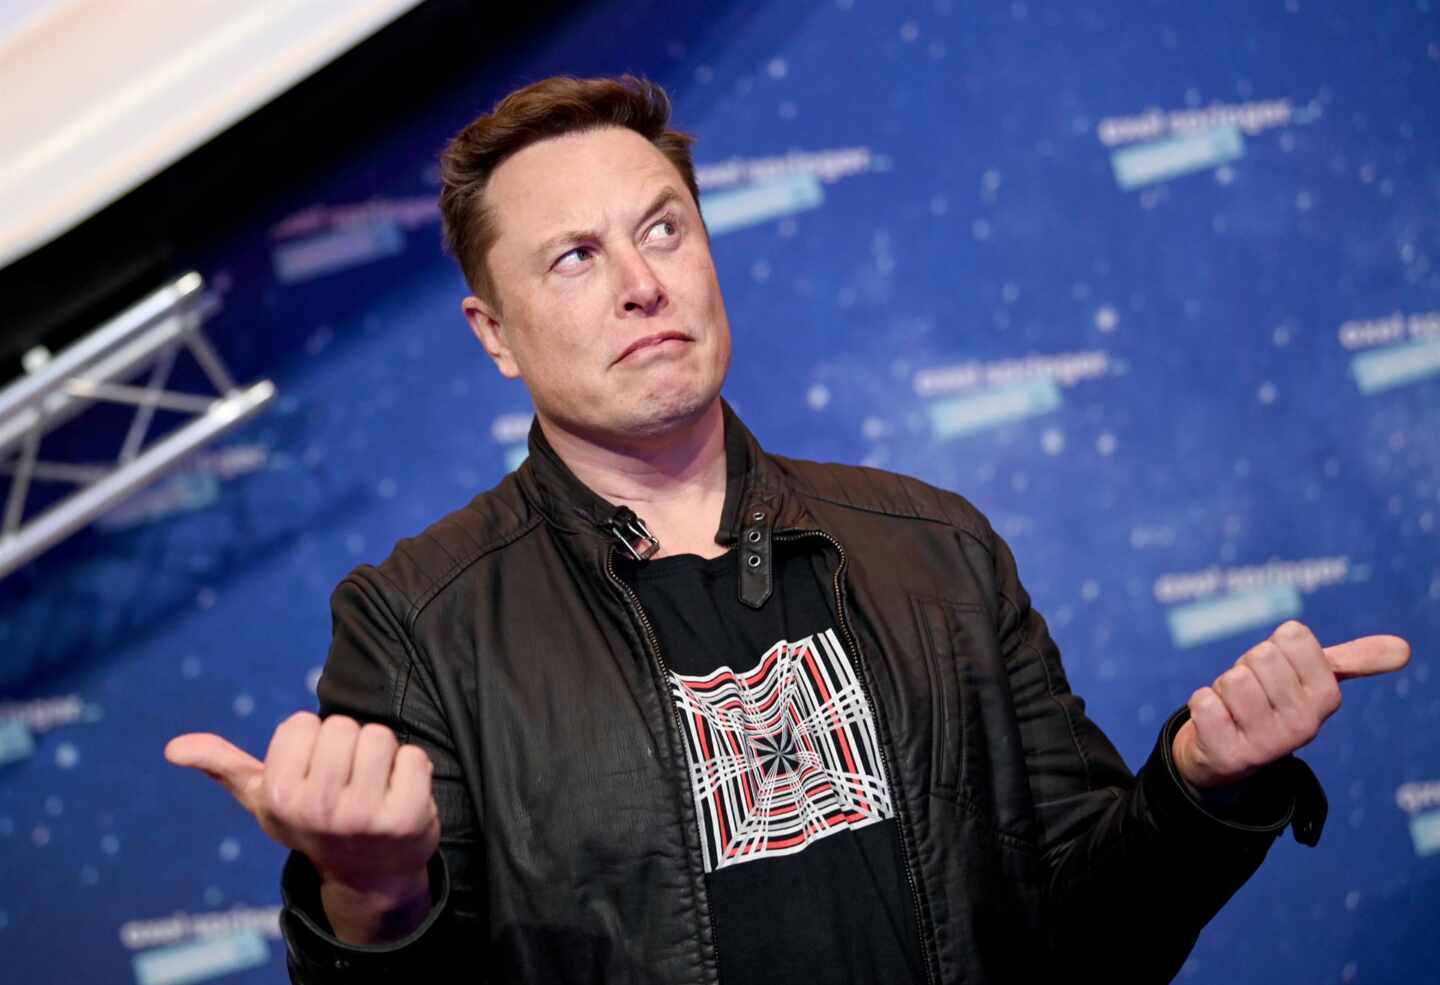 Elon Musk supera a Jeff Bezos y se convierte en la persona más rica del mundo